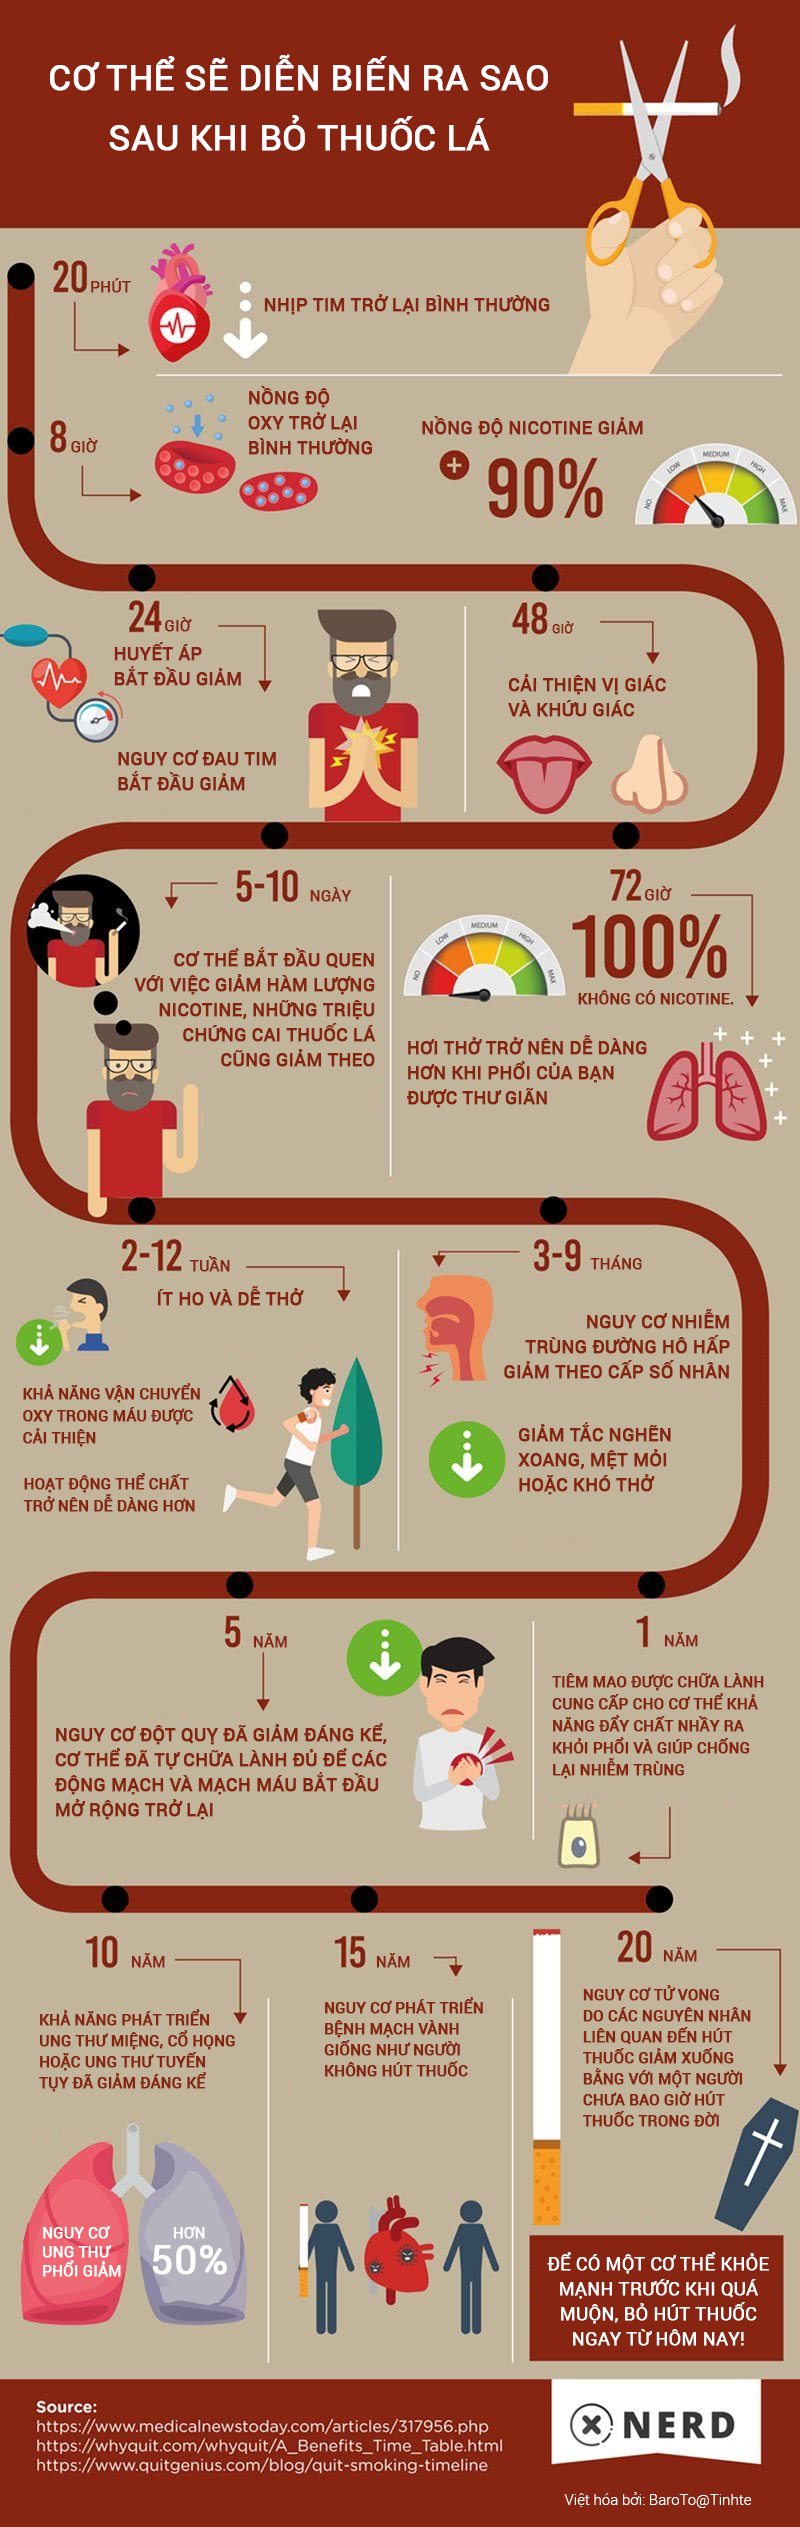 [Infographic] Cơ thể bạn biến đổi như thế nào sau khi cai thuốc lá? 0